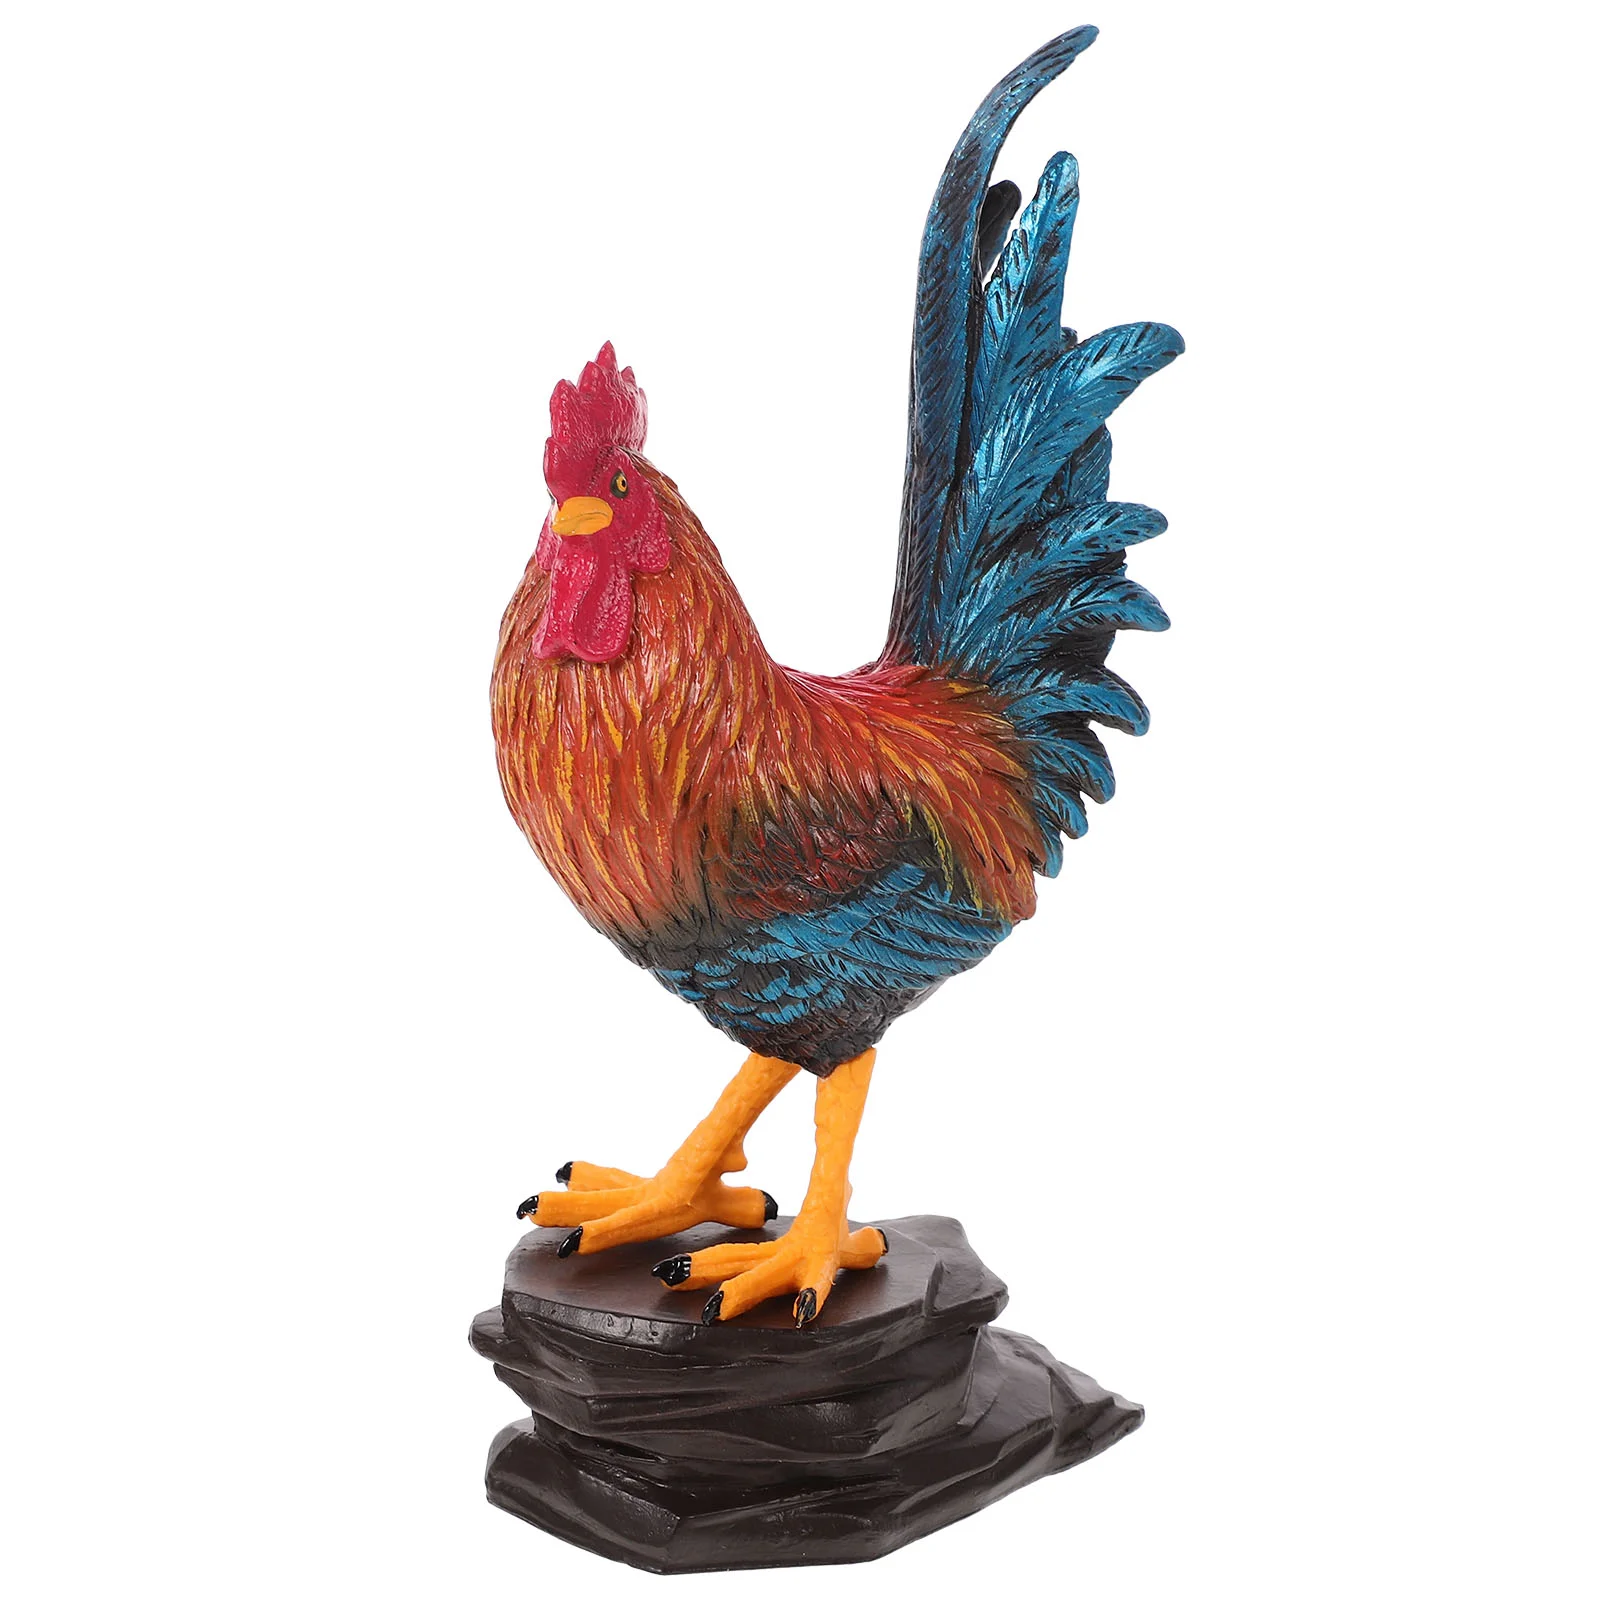 

Simulated Poultry Model Rooster Toys Desktop Plastic Landscape Layout Prop Unique Farm Decoration